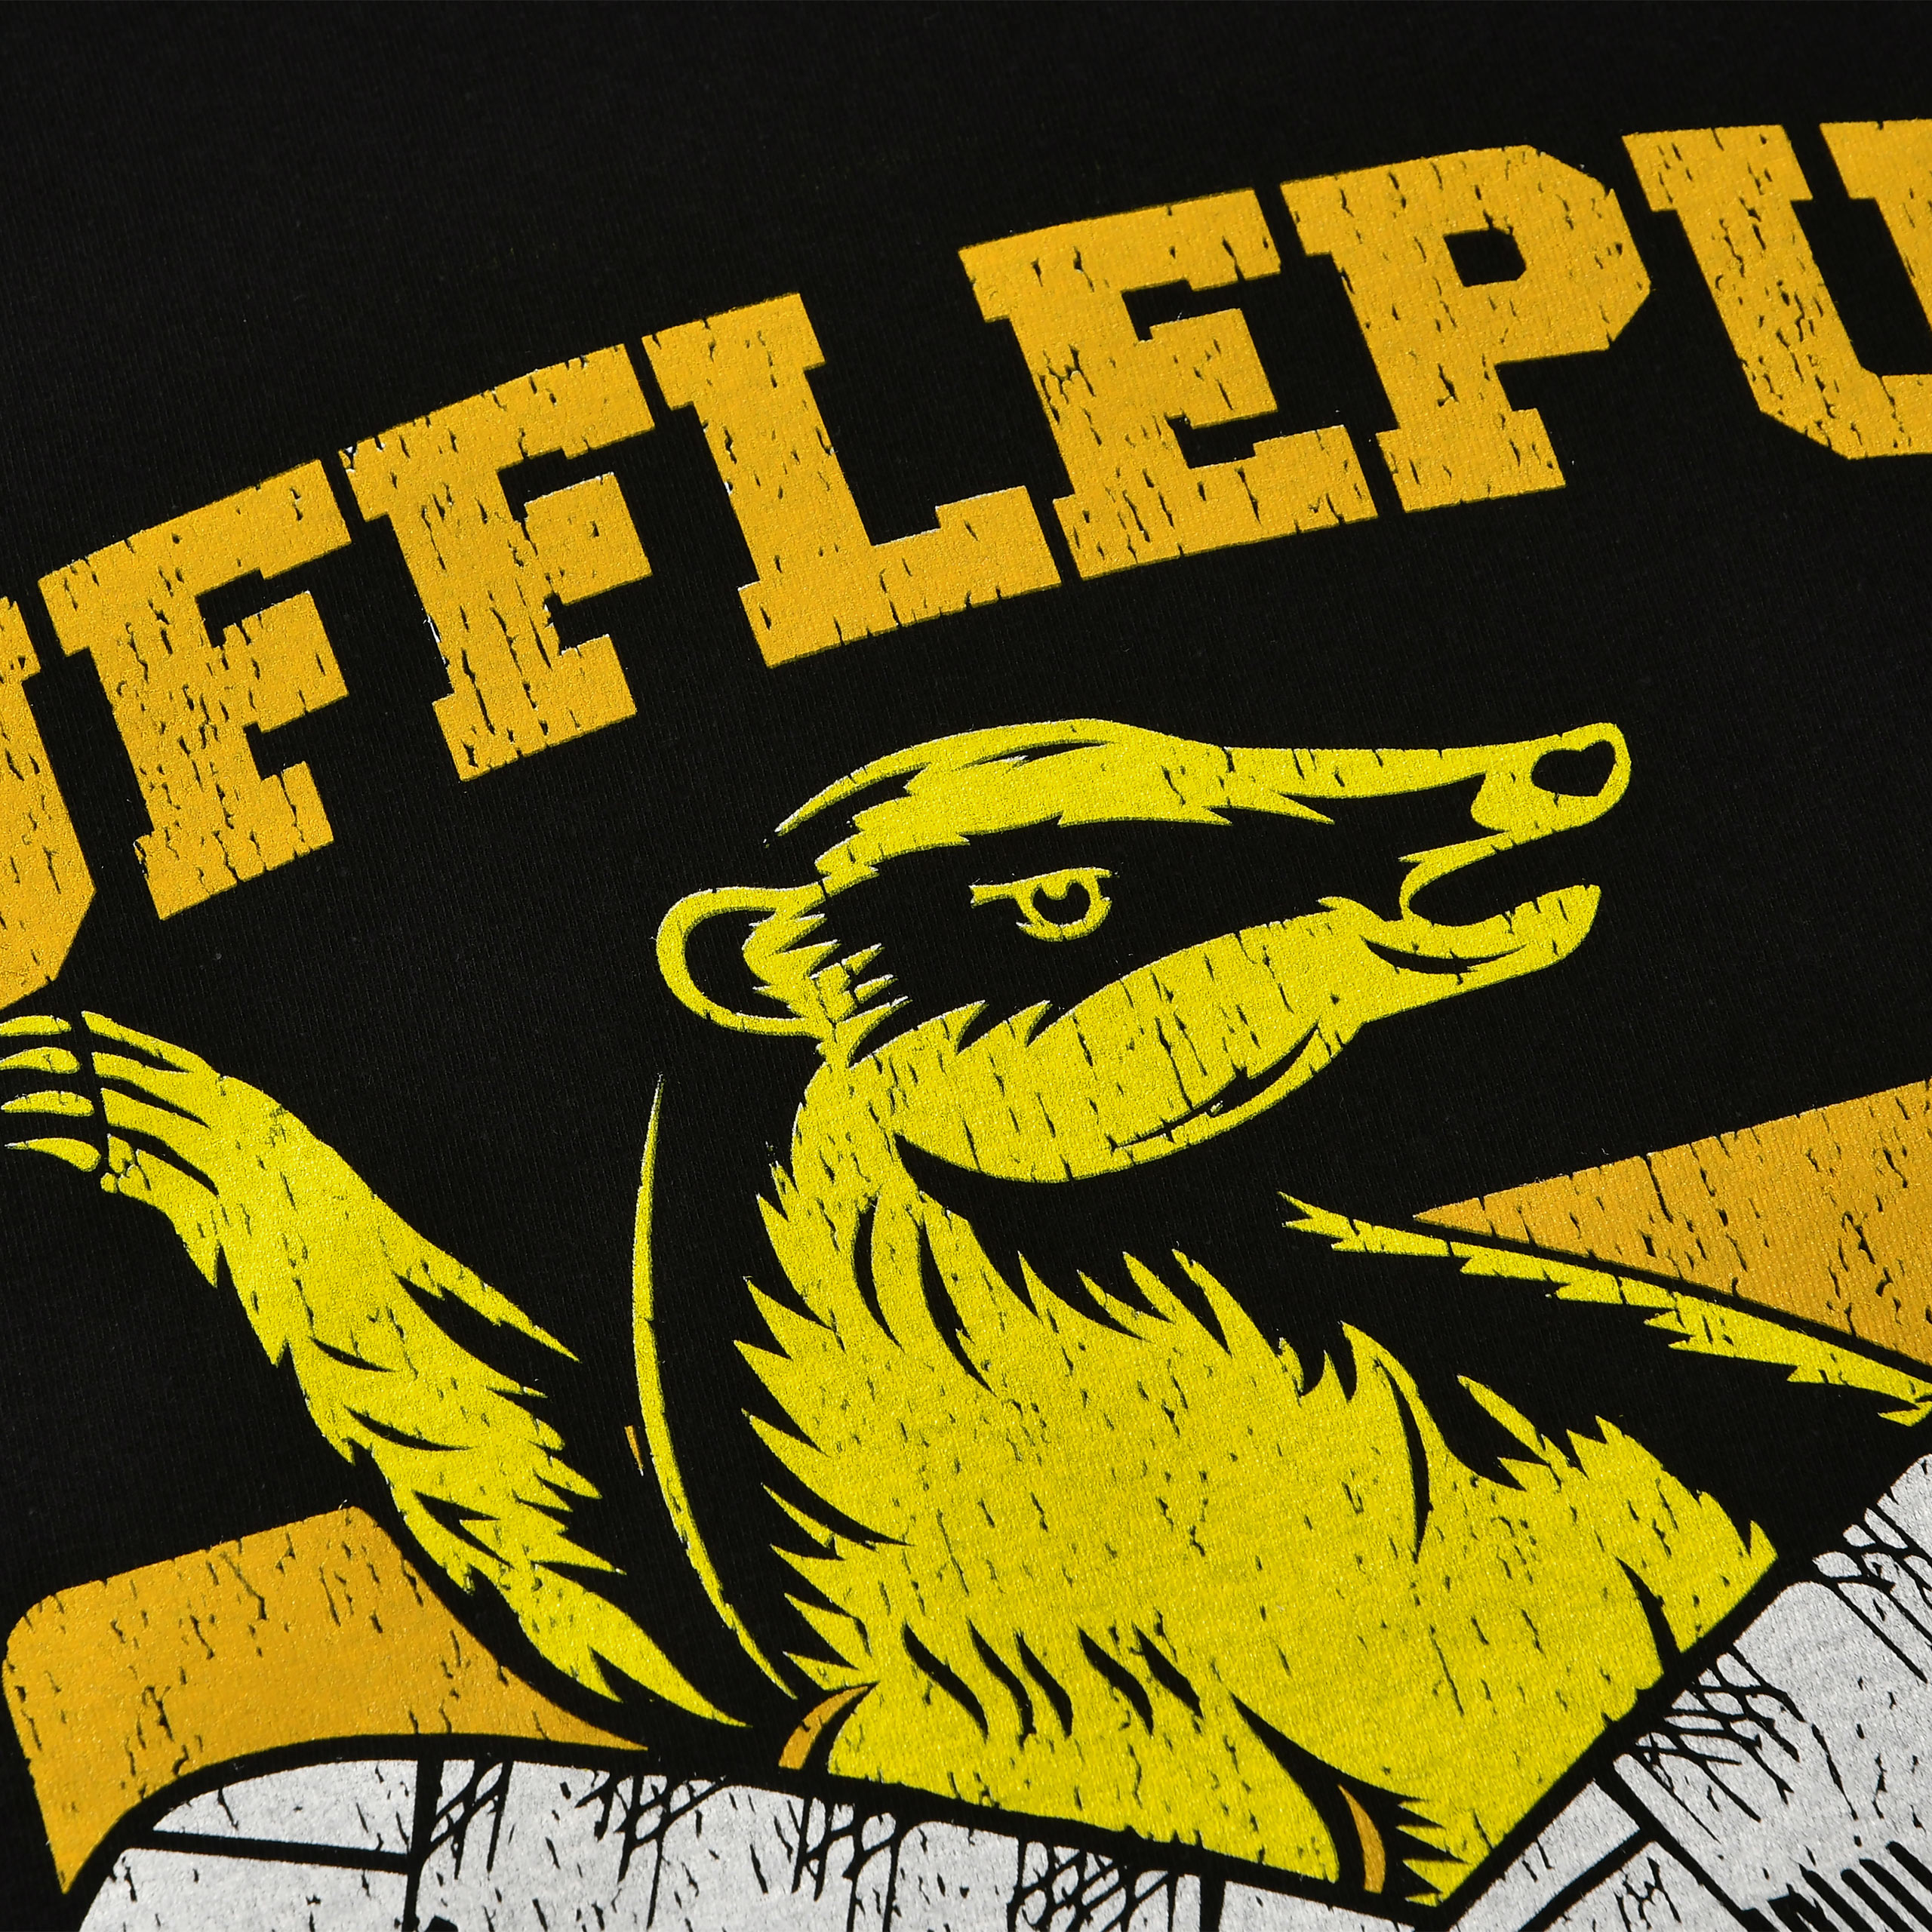 T-shirt noir du collège Quidditch Hufflepuff - Harry Potter